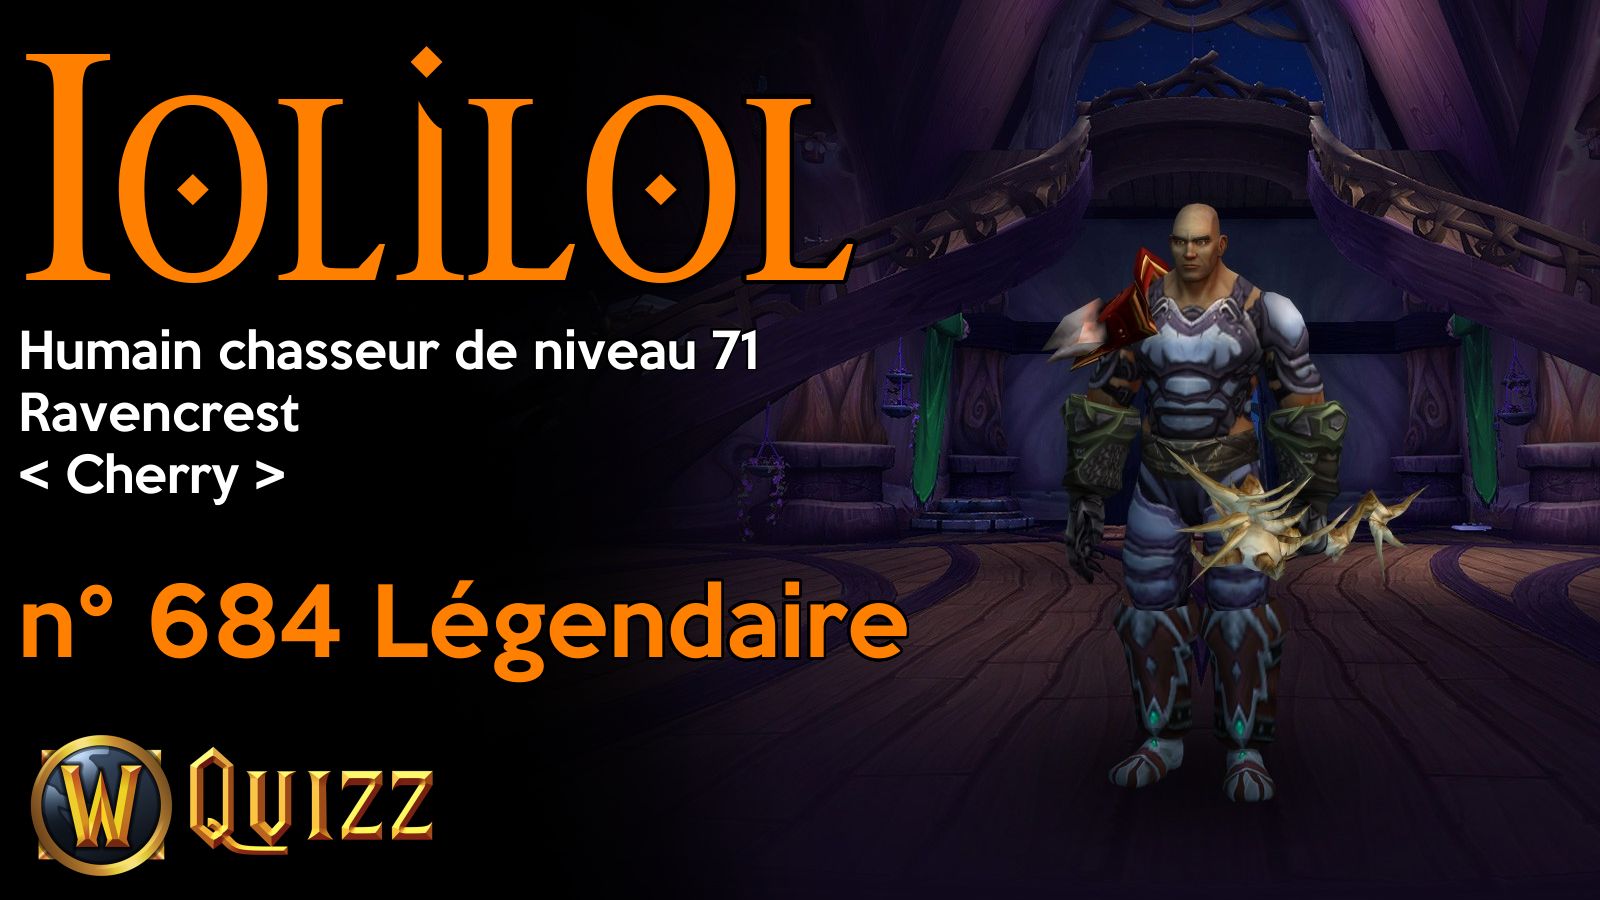 Iolilol, Humain chasseur de niveau 71, Ravencrest